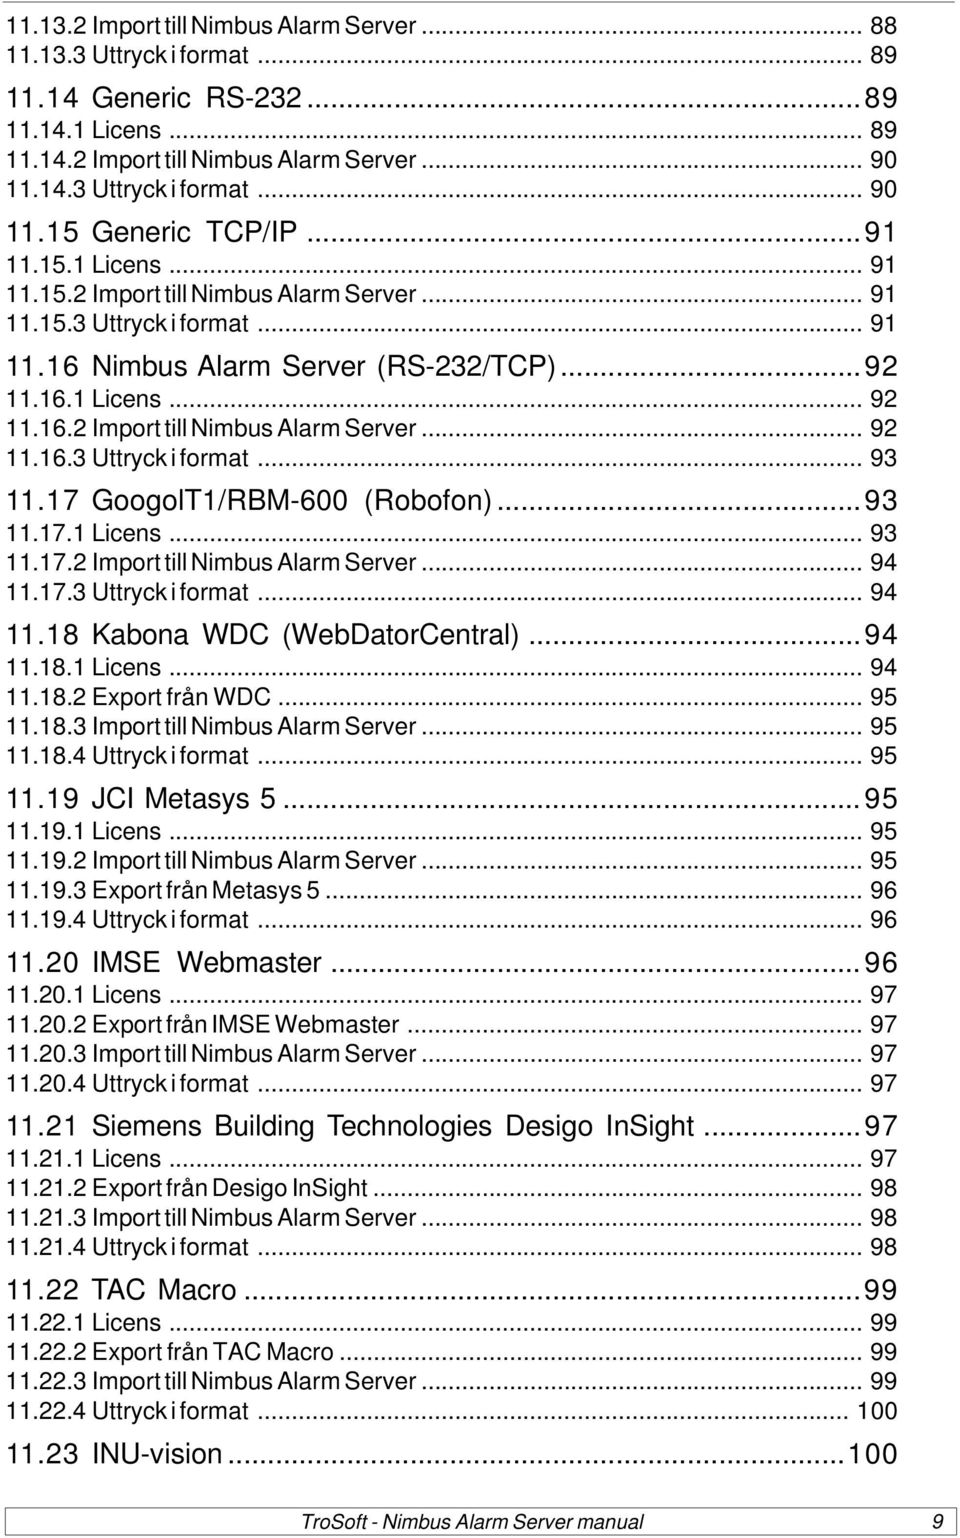 17 GoogolT1/RBM-600 (Robofon)...93 11.17.1 Licens... 93 11.17.2 Import till Nimbus Alarm Server... 94 11.17.3 Uttryck i format... 94 11.18 Kabona WDC (WebDatorCentral)...94 11.18.1 Licens... 94 11.18.2 Export från WDC.